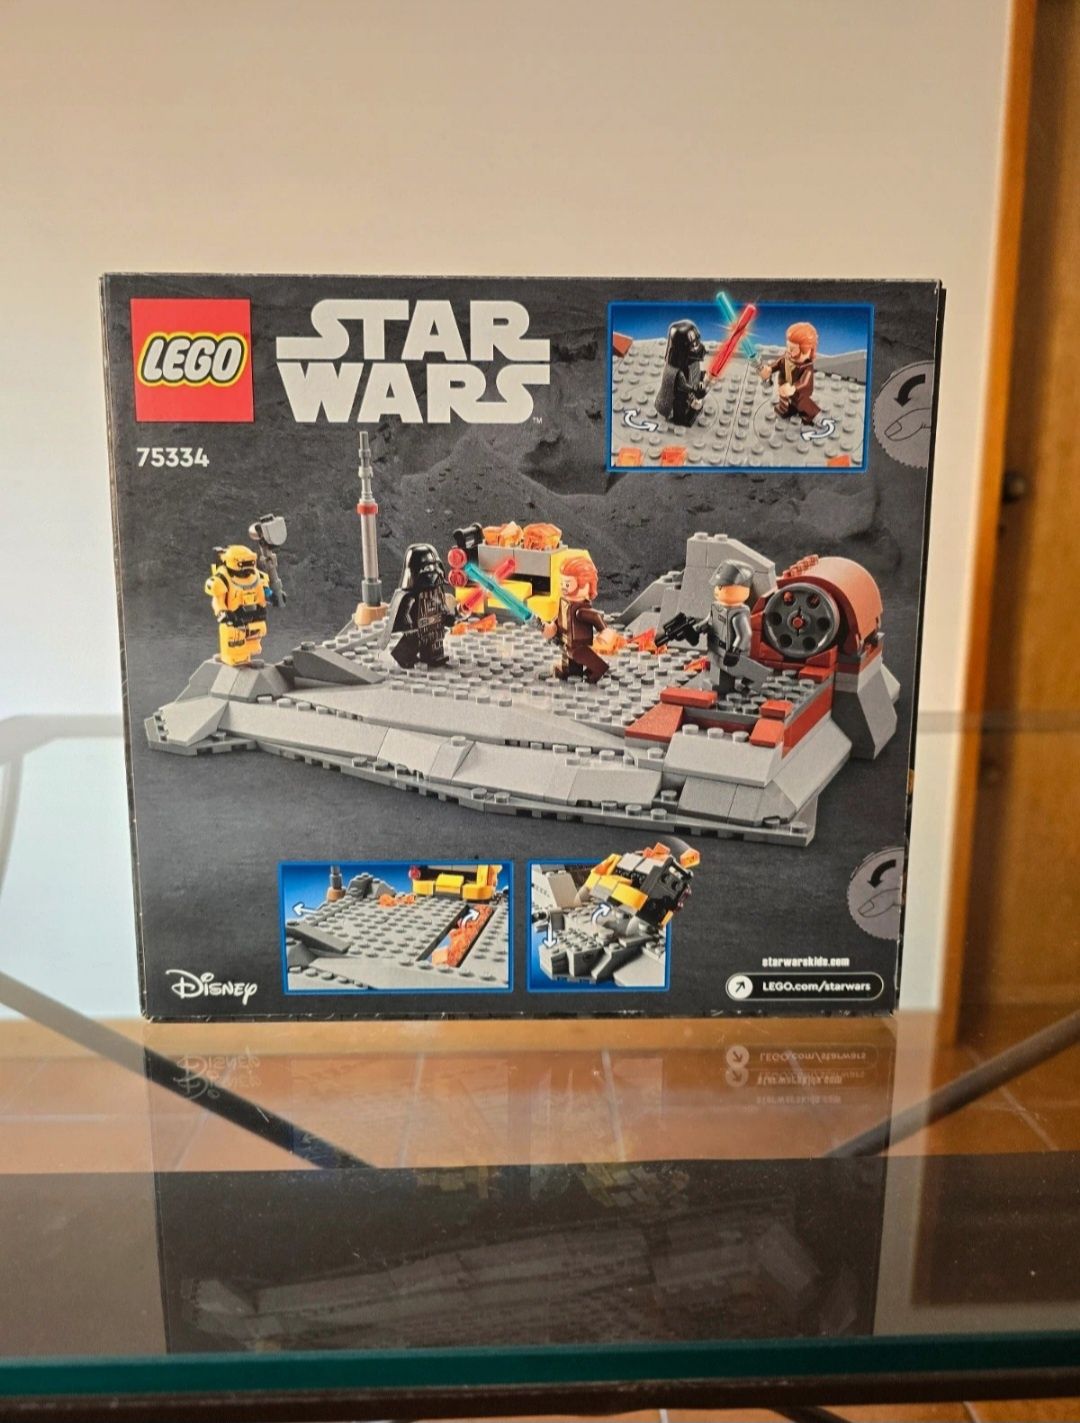 Lego star wars 75334